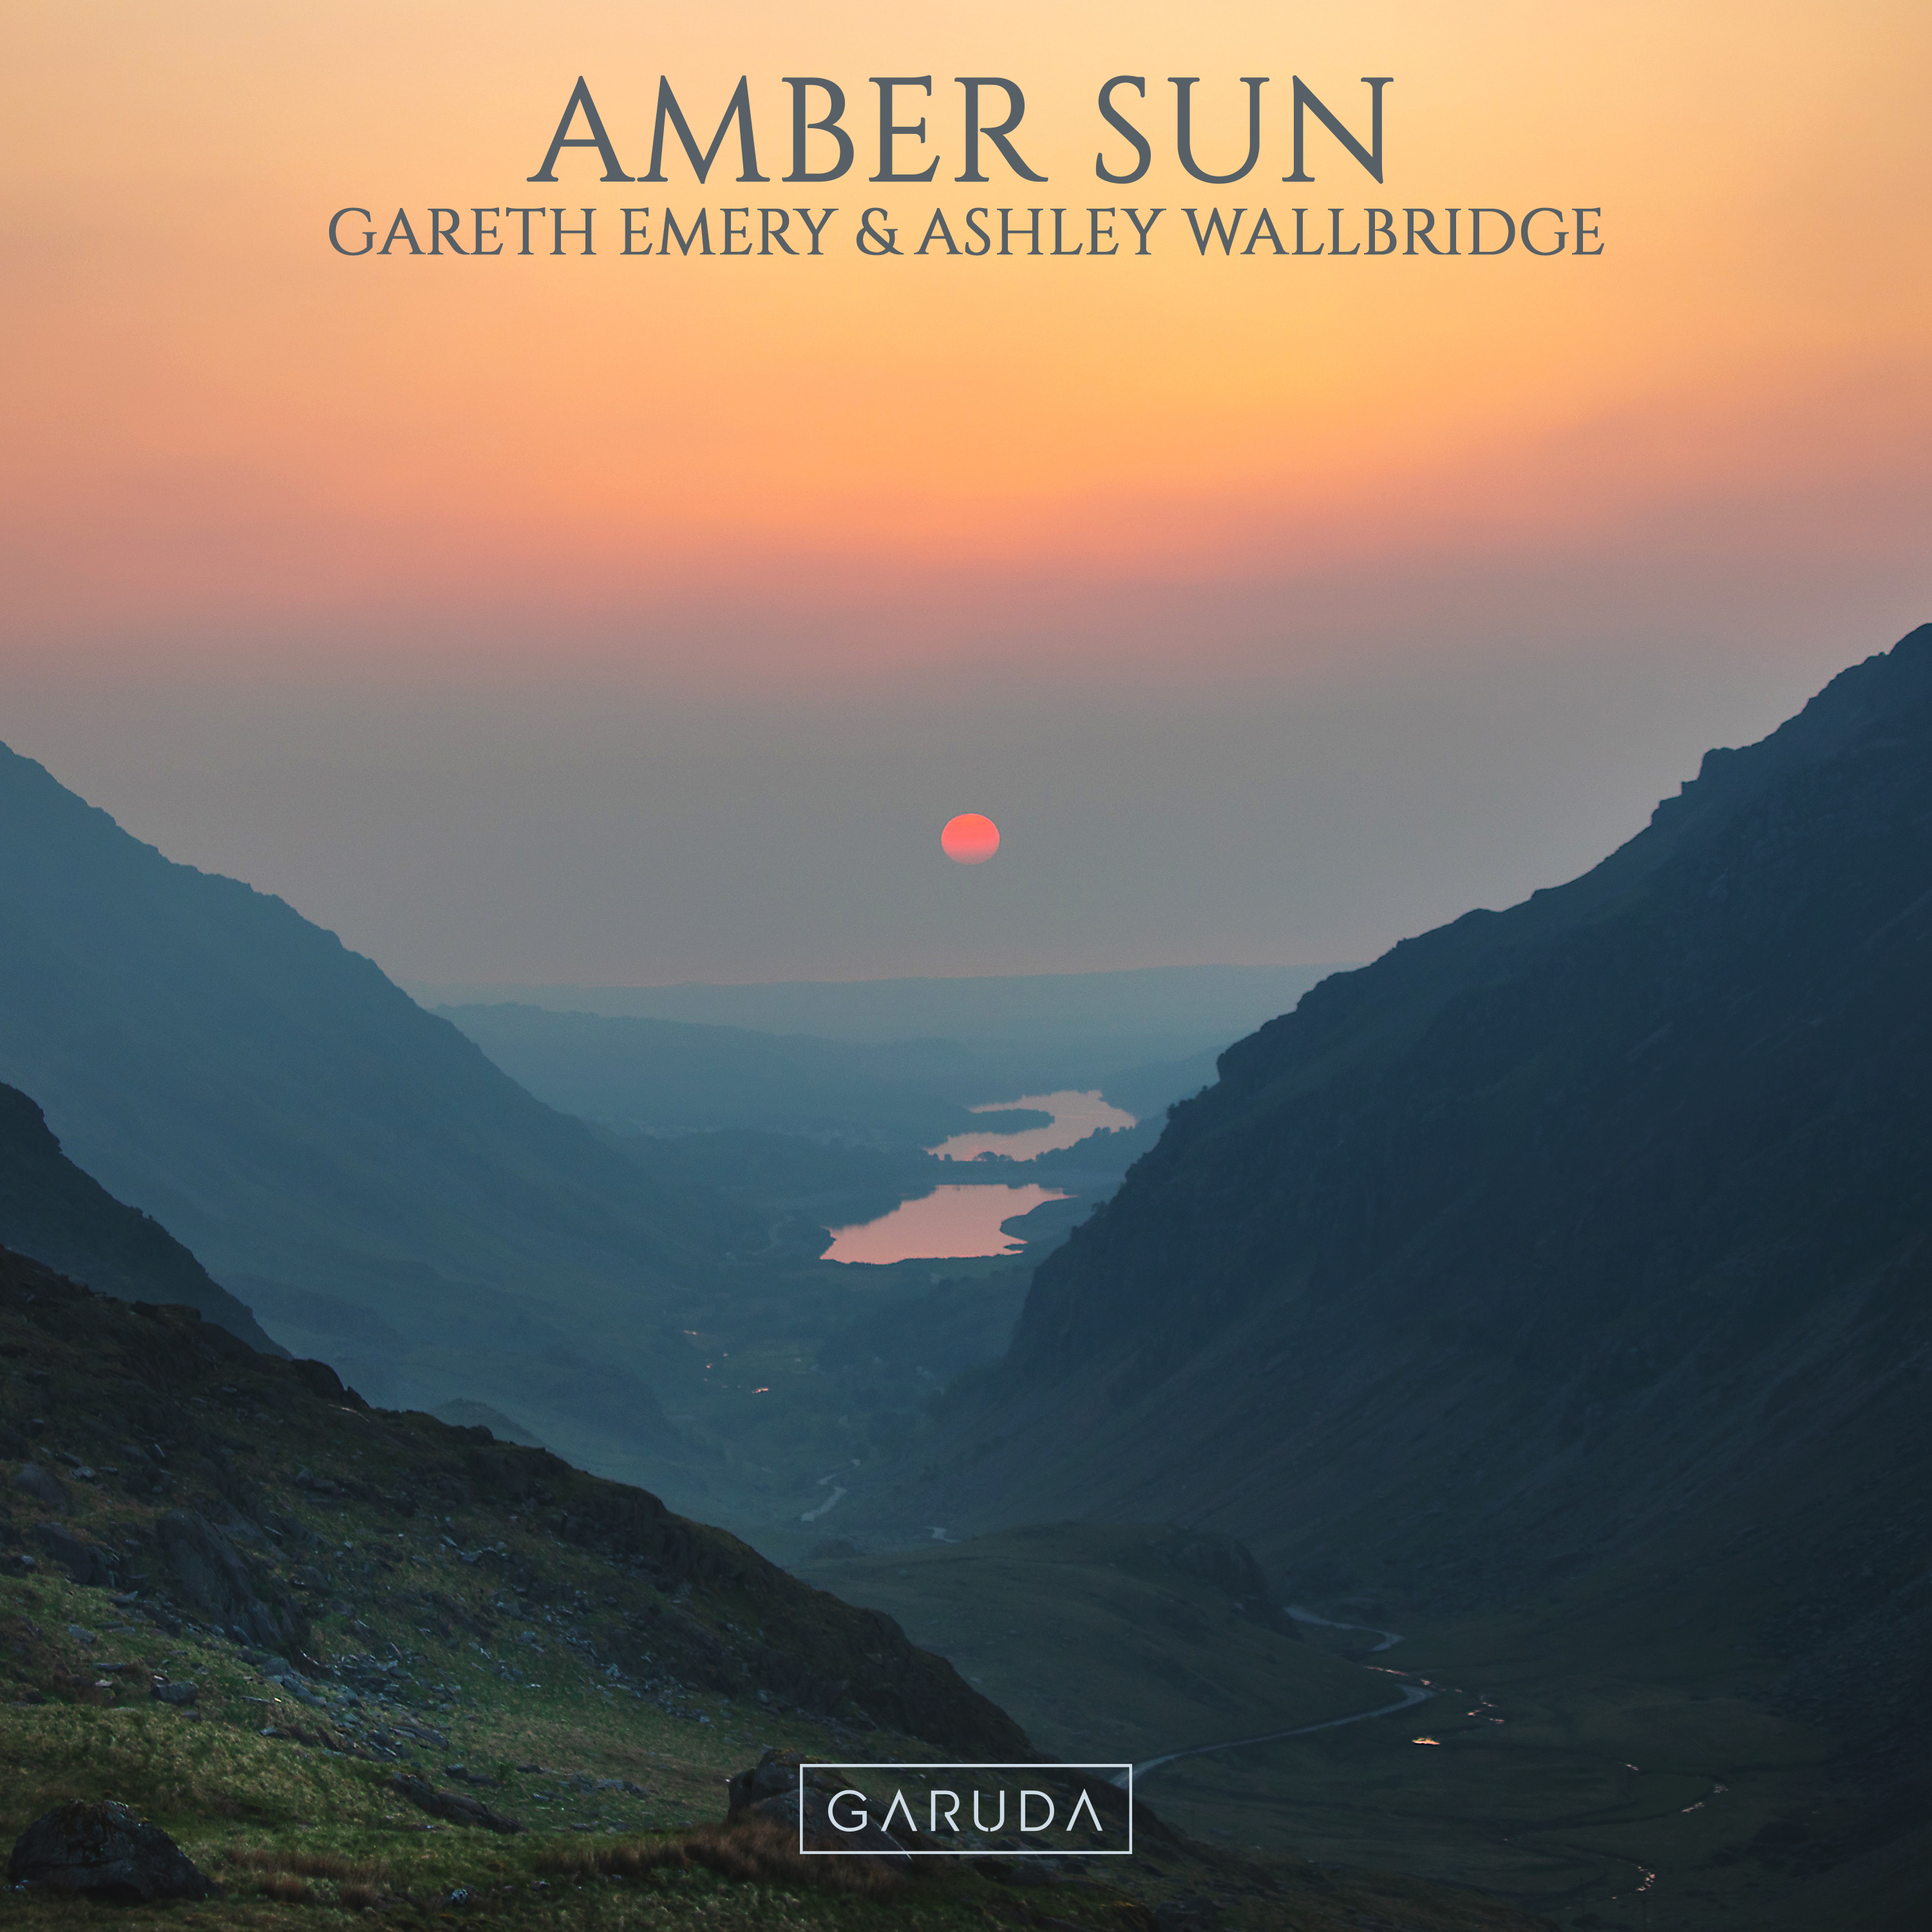 Gareth Emery & Ashley Wallbridge — Amber Sun cover artwork